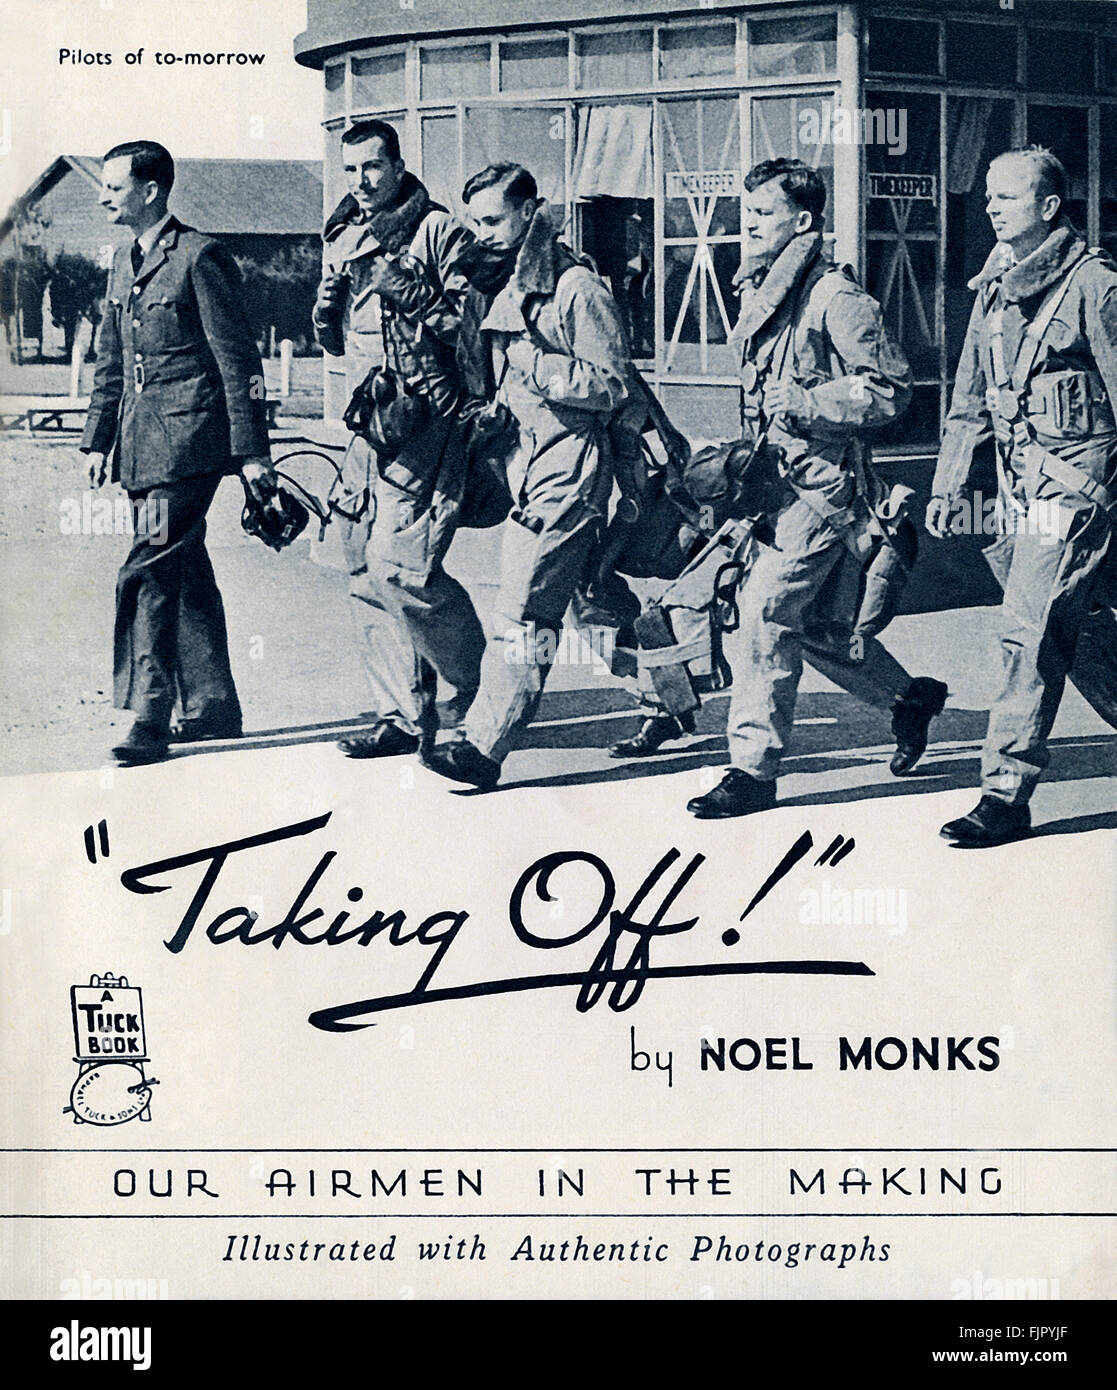 Página de título para despegar! Nuestros aviadores en las decisiones. Por Noel monjes, c 1940. Foto de stock